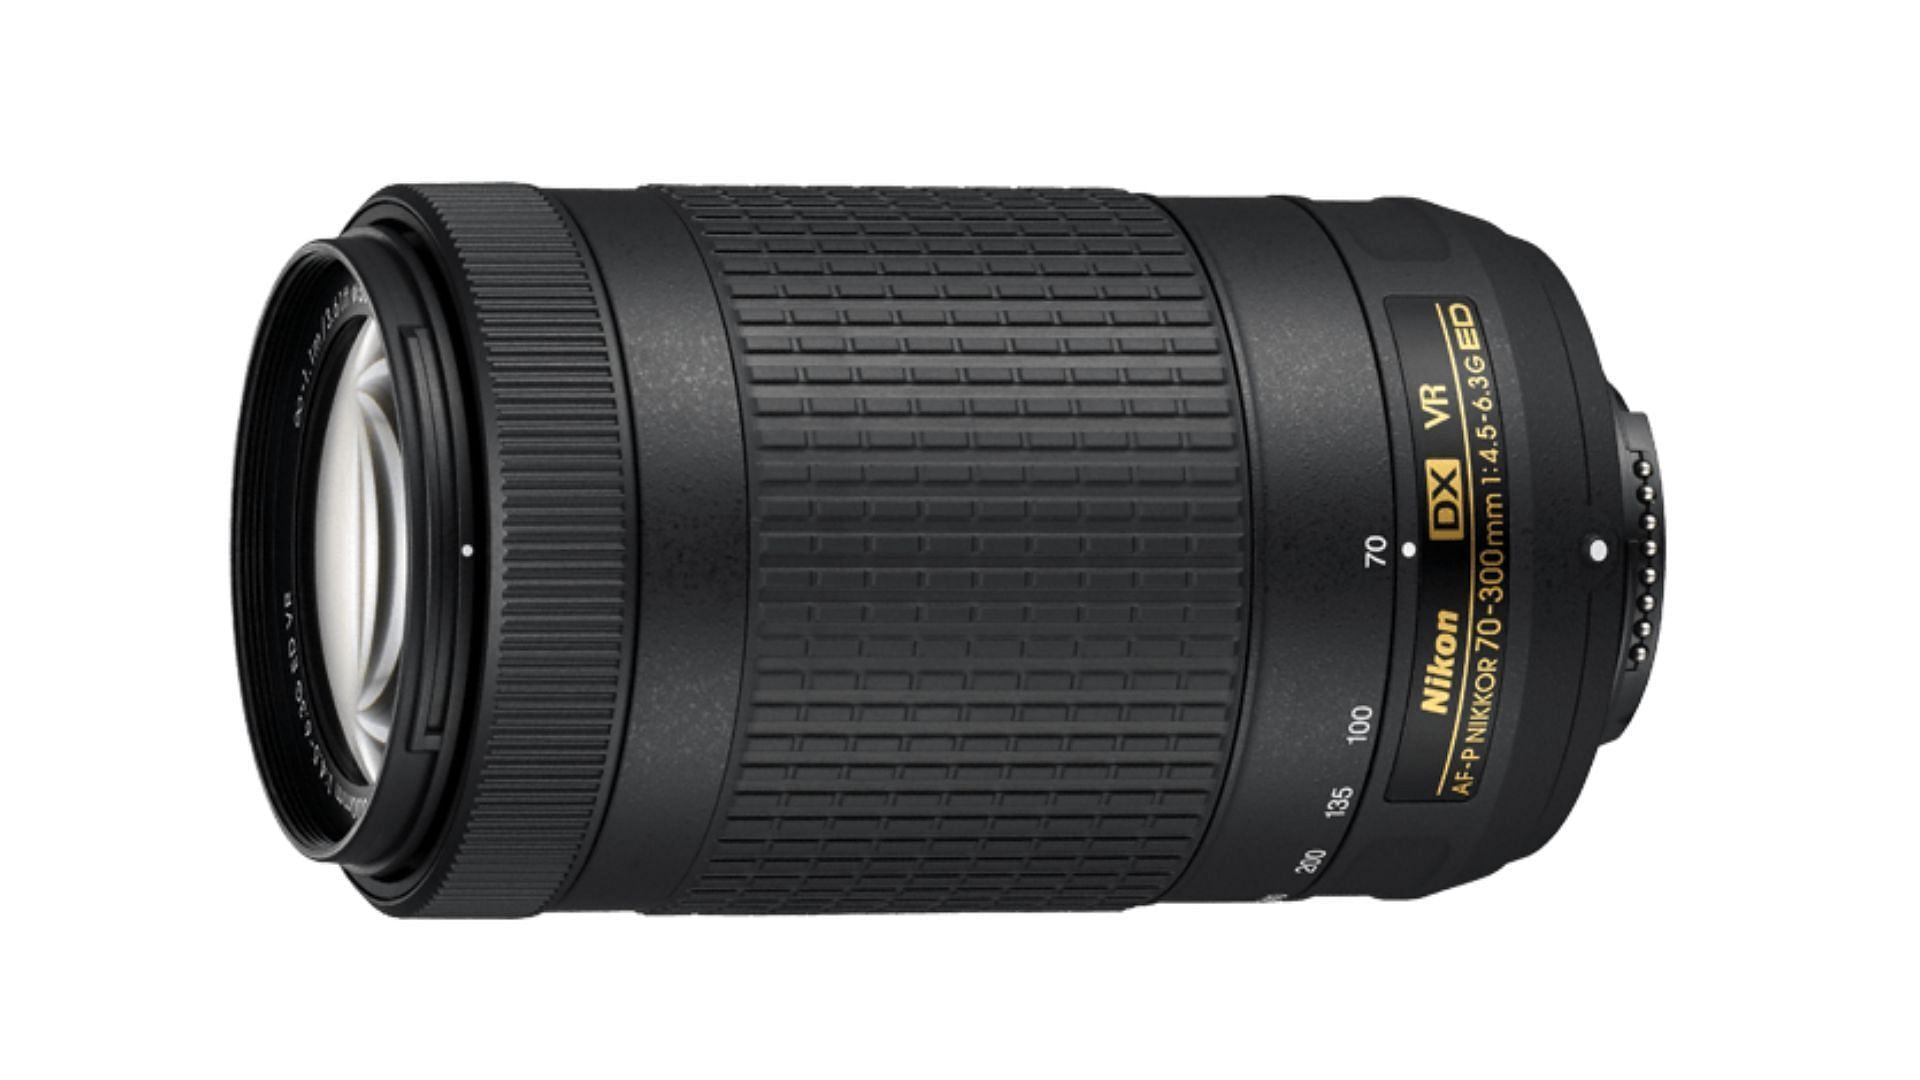 AF-P DX NIKKOR 70-300mm f/4.5-6.3G ED VR - Best telephoto lens for Nikon (Image via Nikon USA)